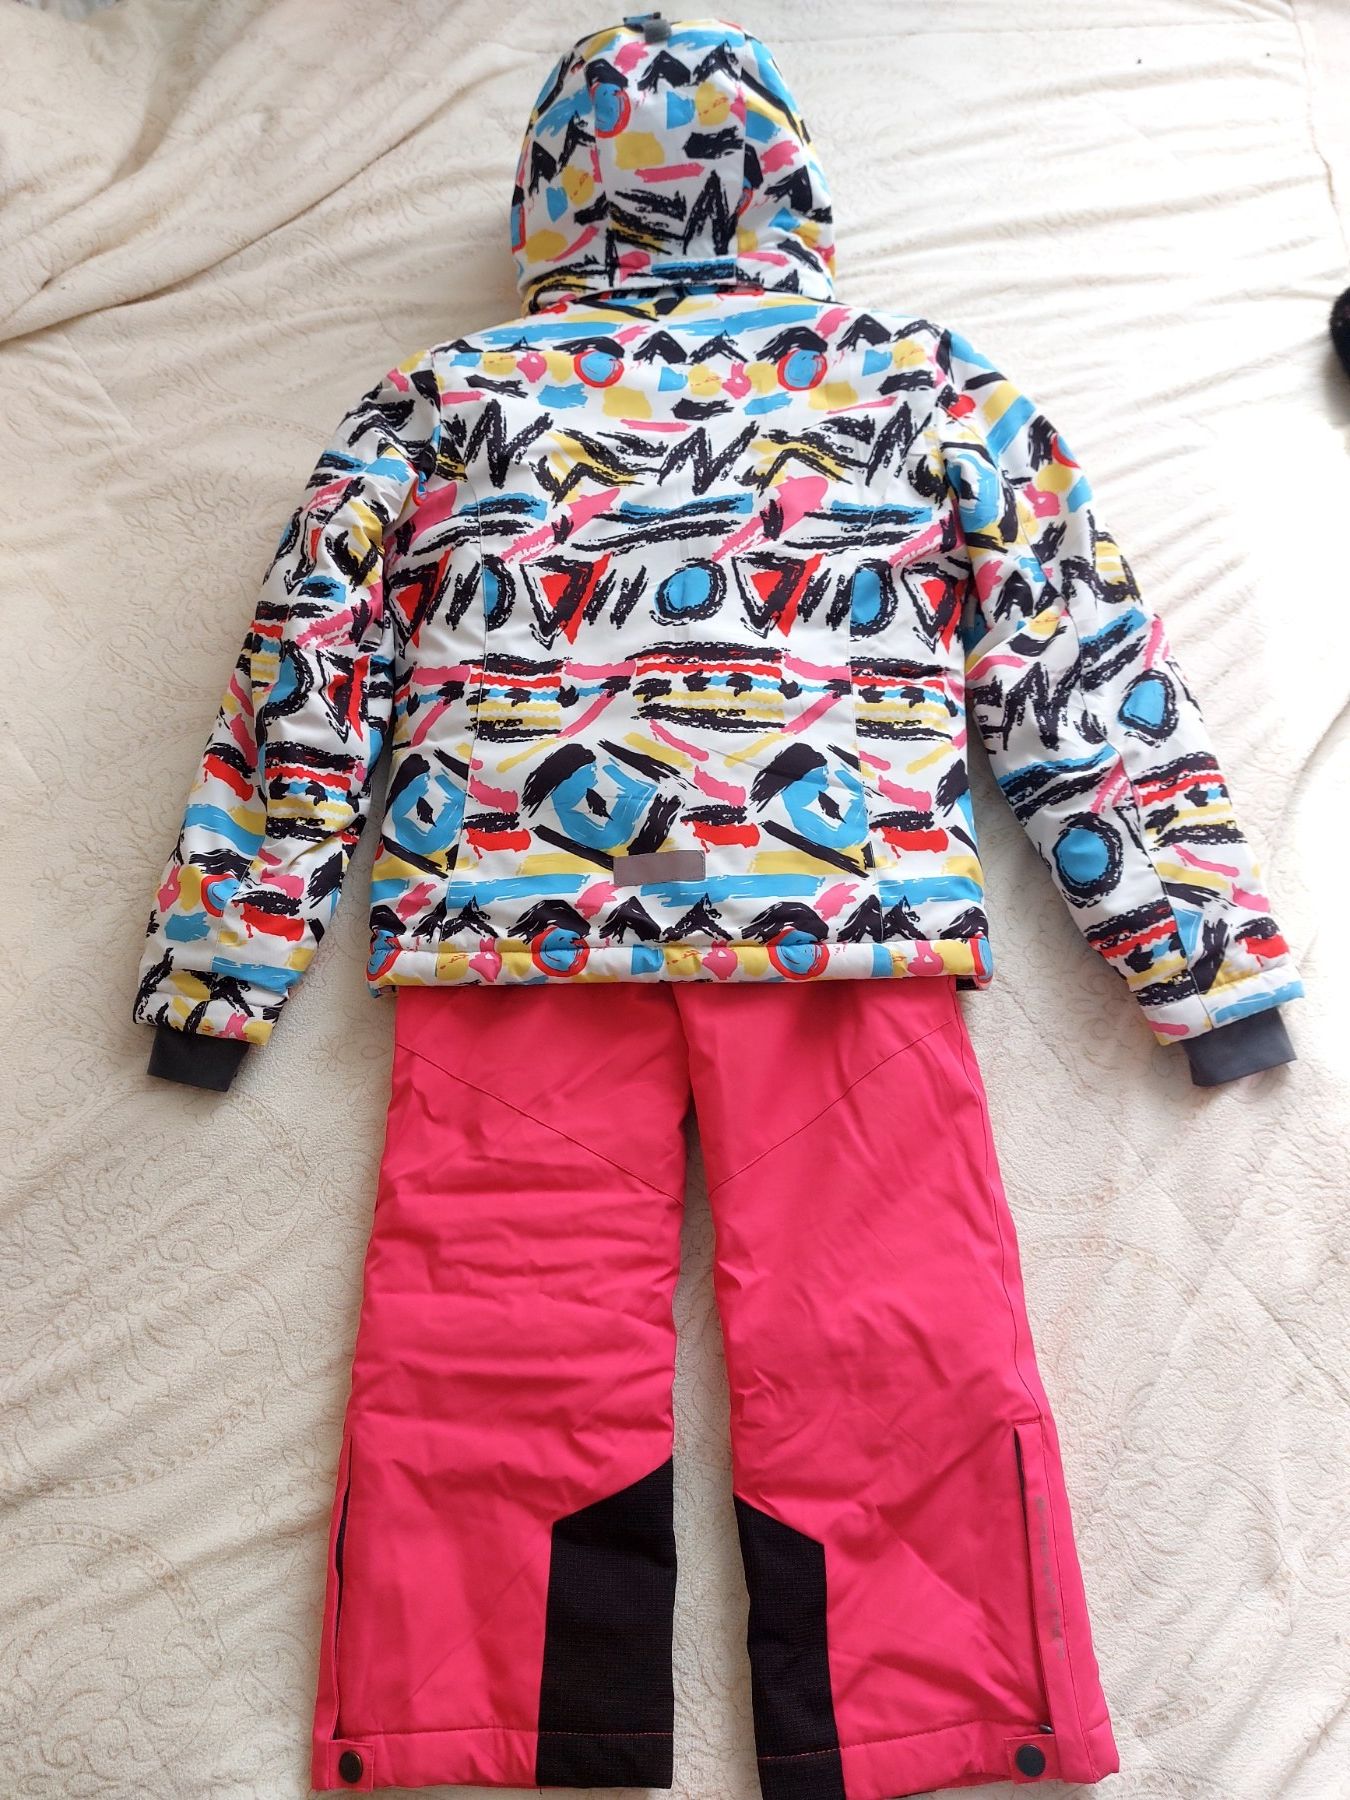 Лыжный детский  костюм Freever на рост 146